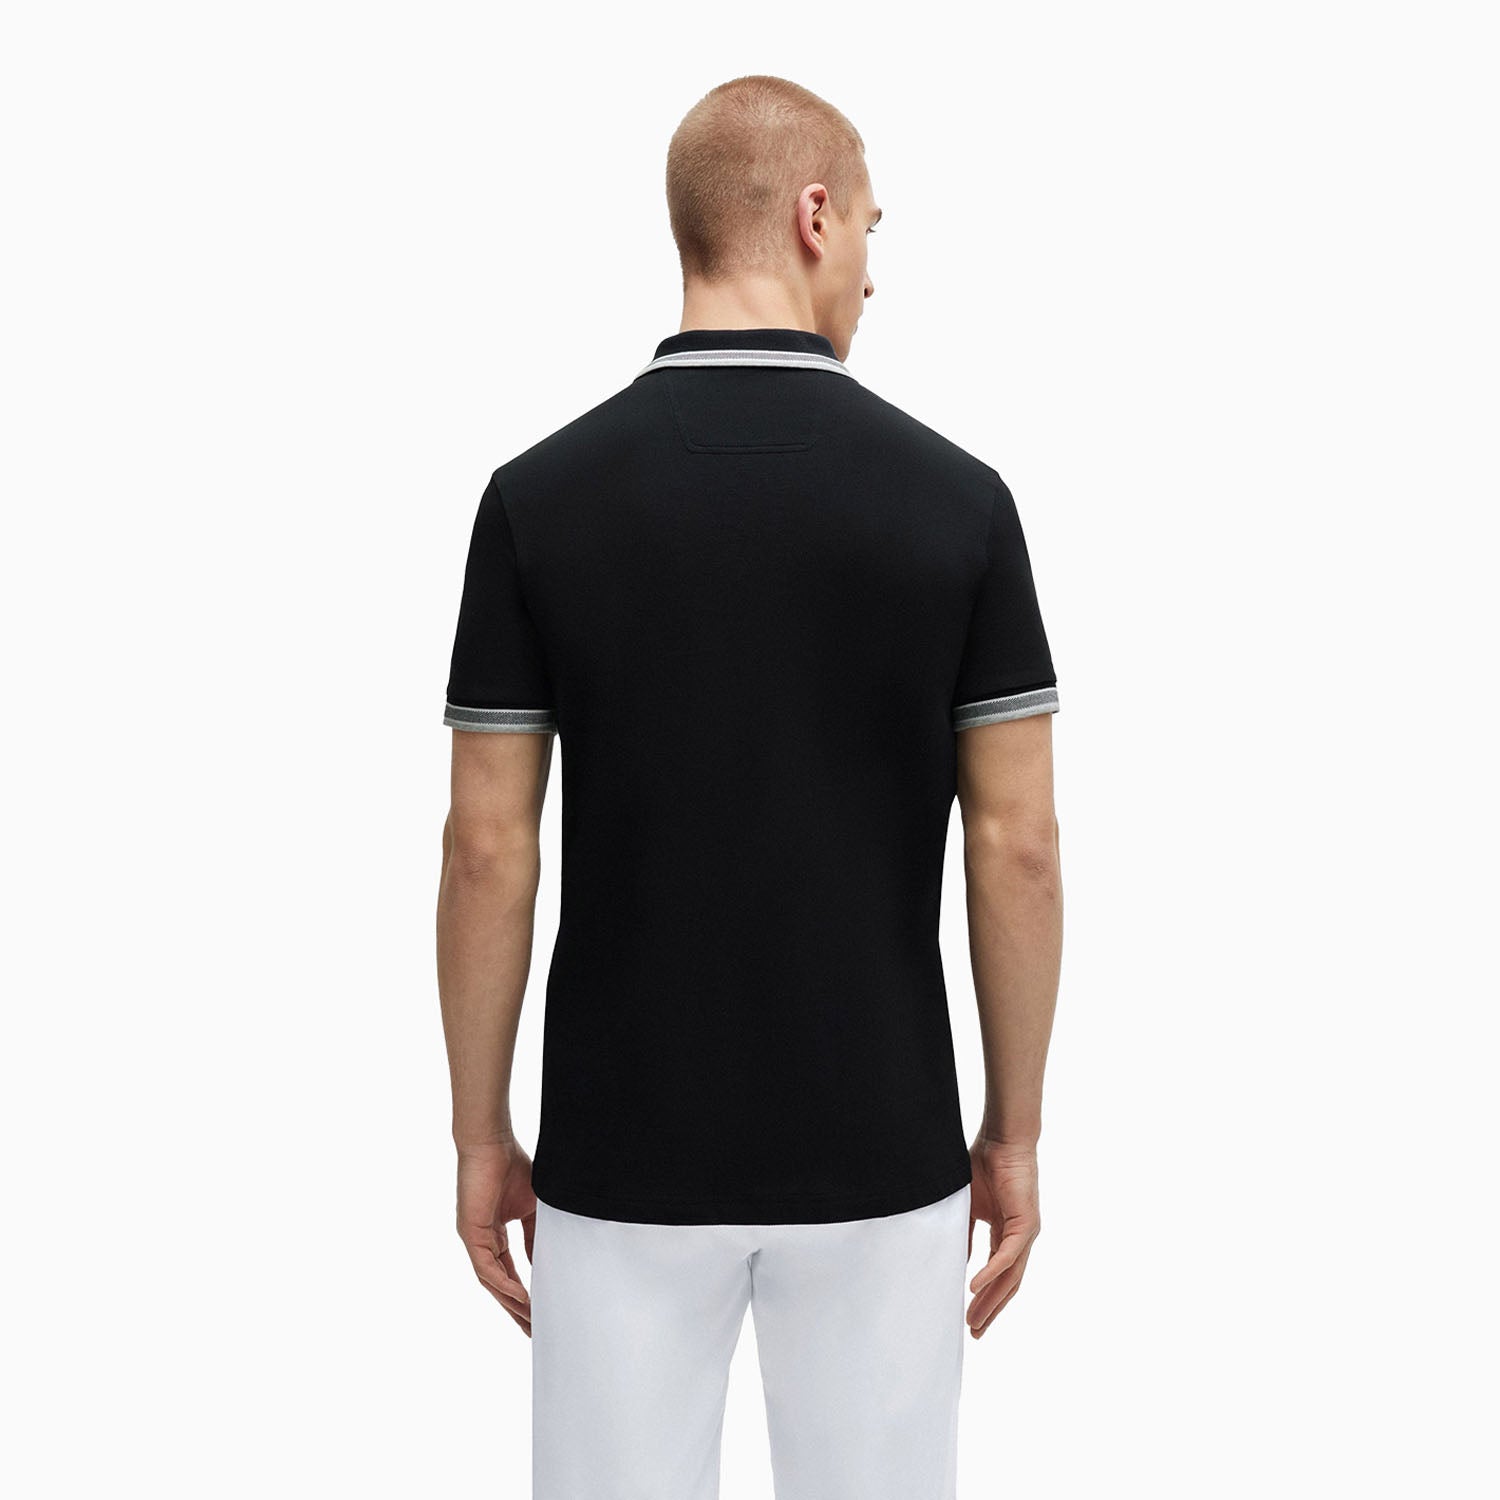 hugo-boss-mens-cotton-pique-polo-shirt-with-contrast-logo-50469055-001